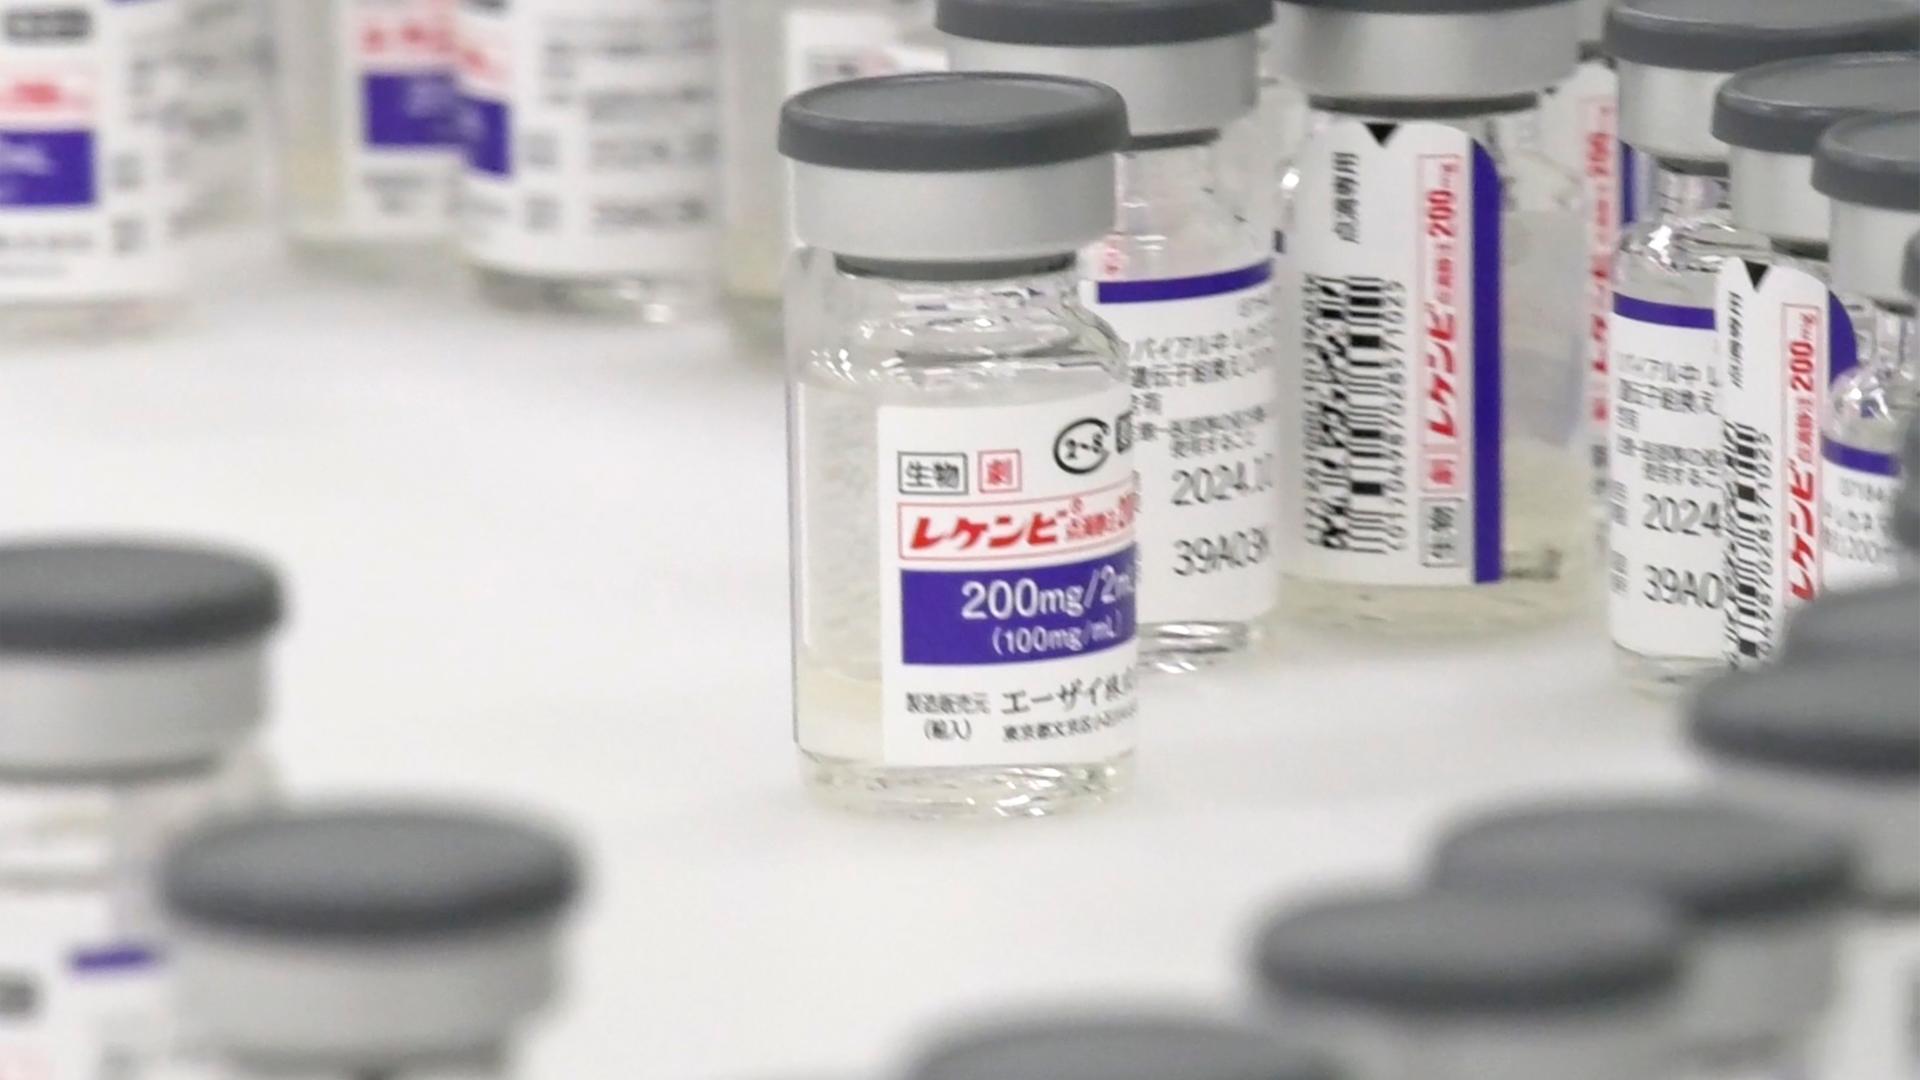 Mehrere Infusionsfläschchen mit dem Alzheimer-Medikament Lecanemab und japanischen Etiketten